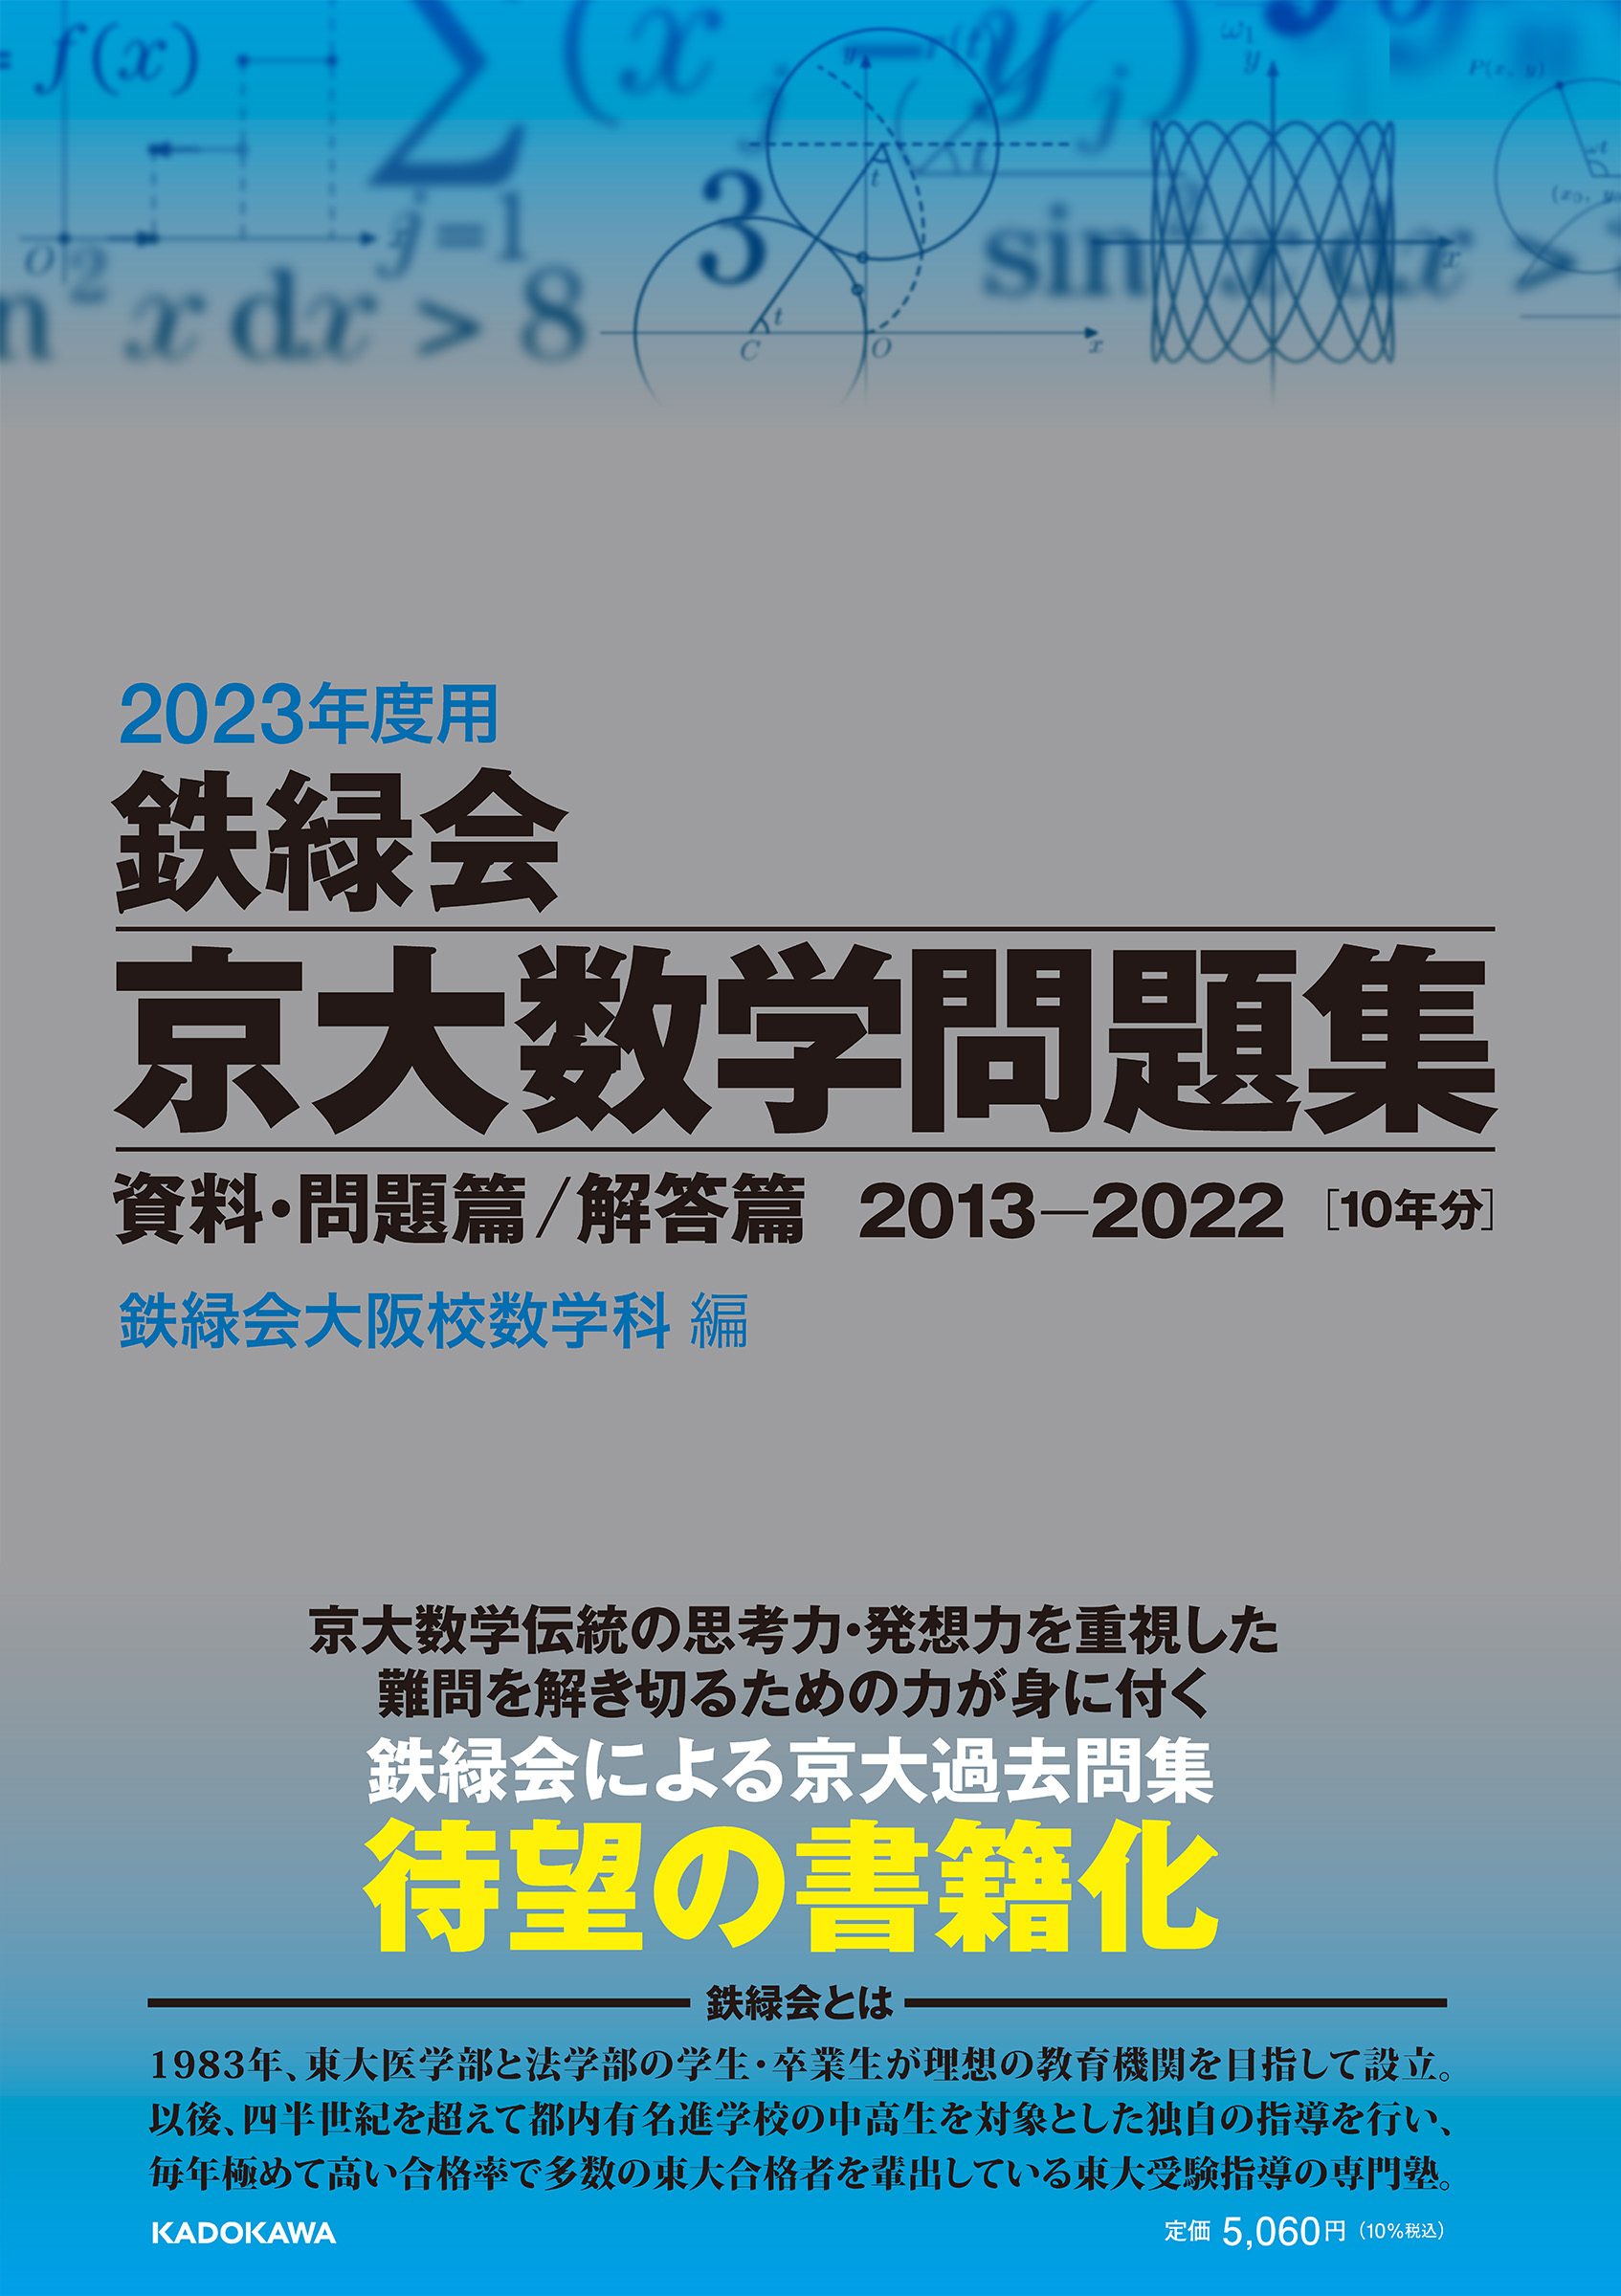 京都大学〈理系〉 前期日程 過去問題5ヶ年 - 参考書